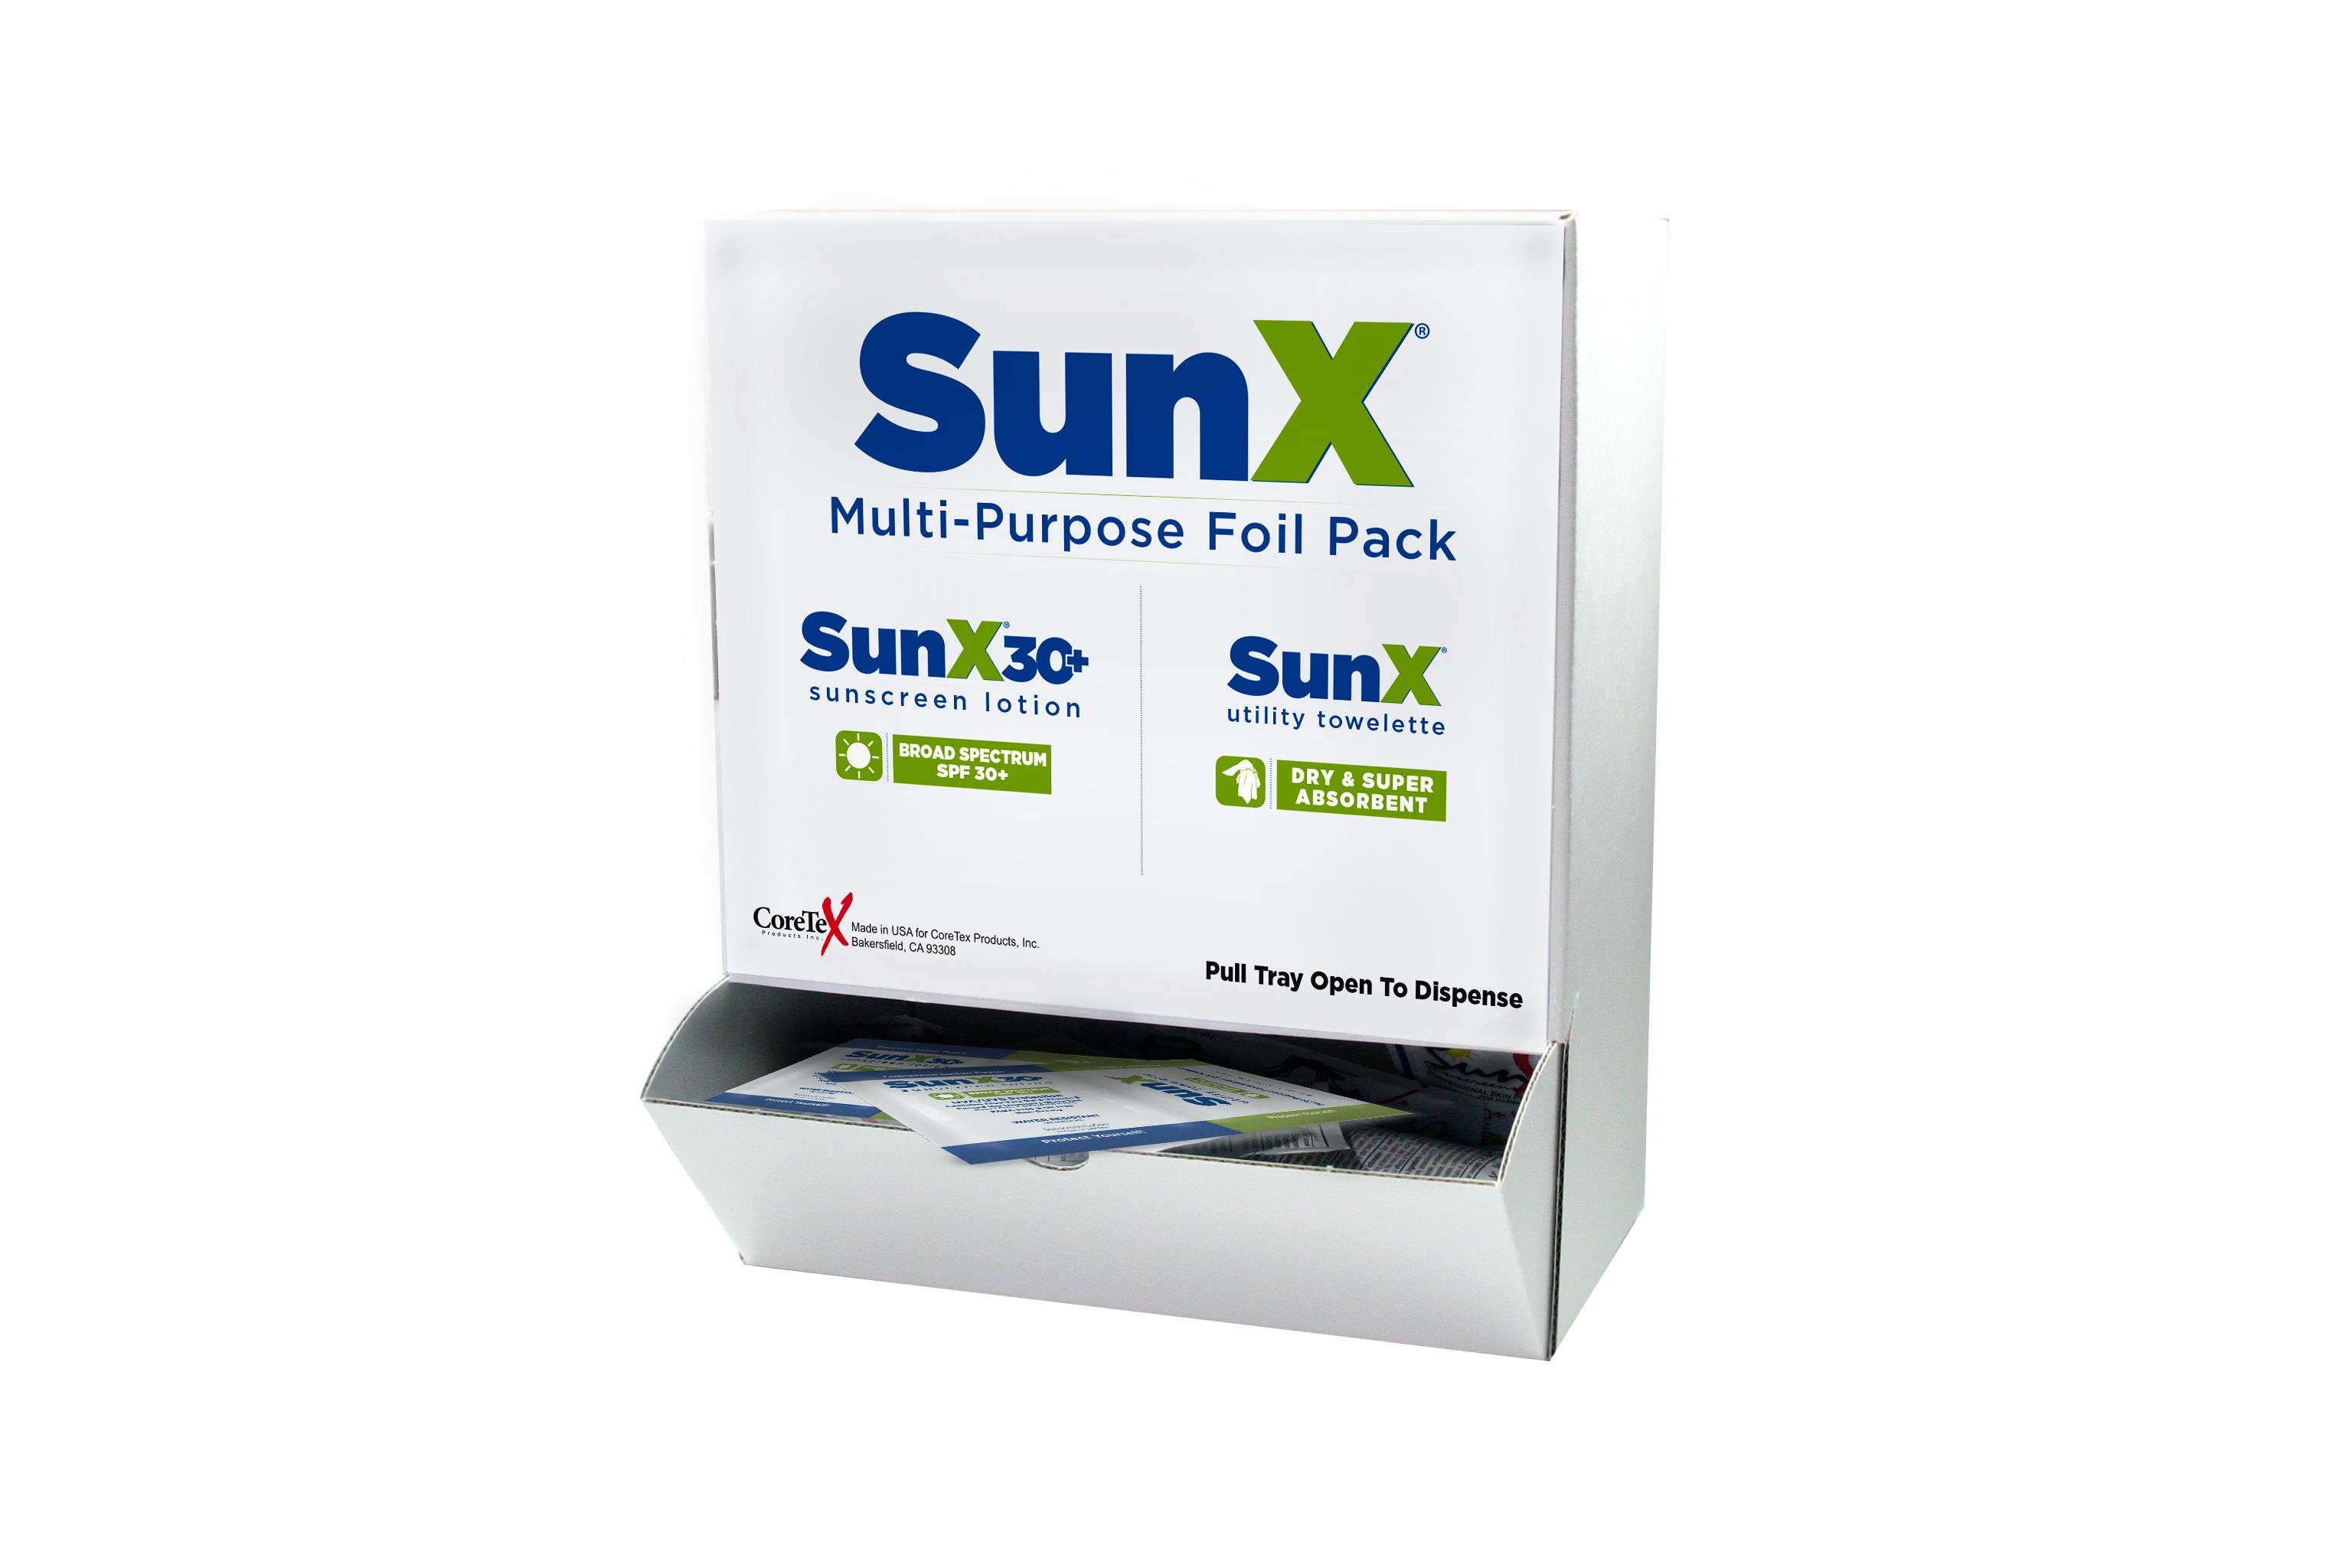 SUNX SPF 30+ TOWELETTE FOIL PACK 50/BX